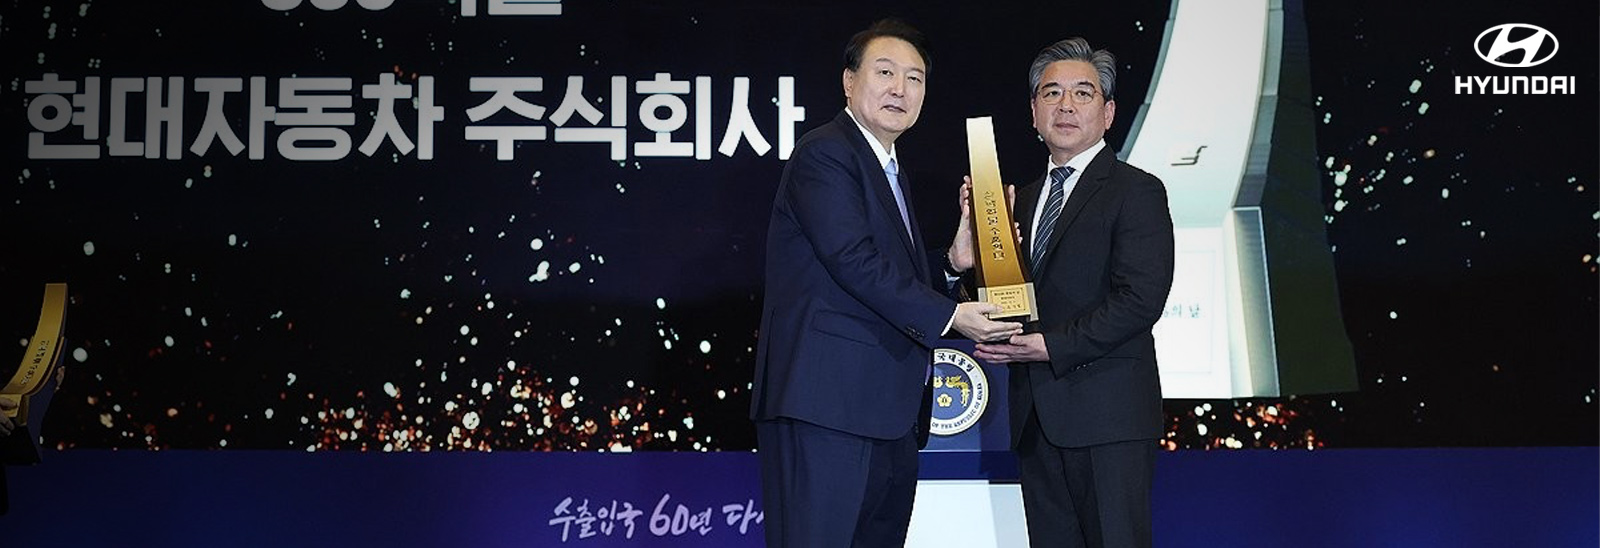 En la ceremonia del 60º Día del Comercio, celebrada en COEX en Samseong-dong, Gangnam-gu, Seúl, Hyundai Motor Company recibió el premio 